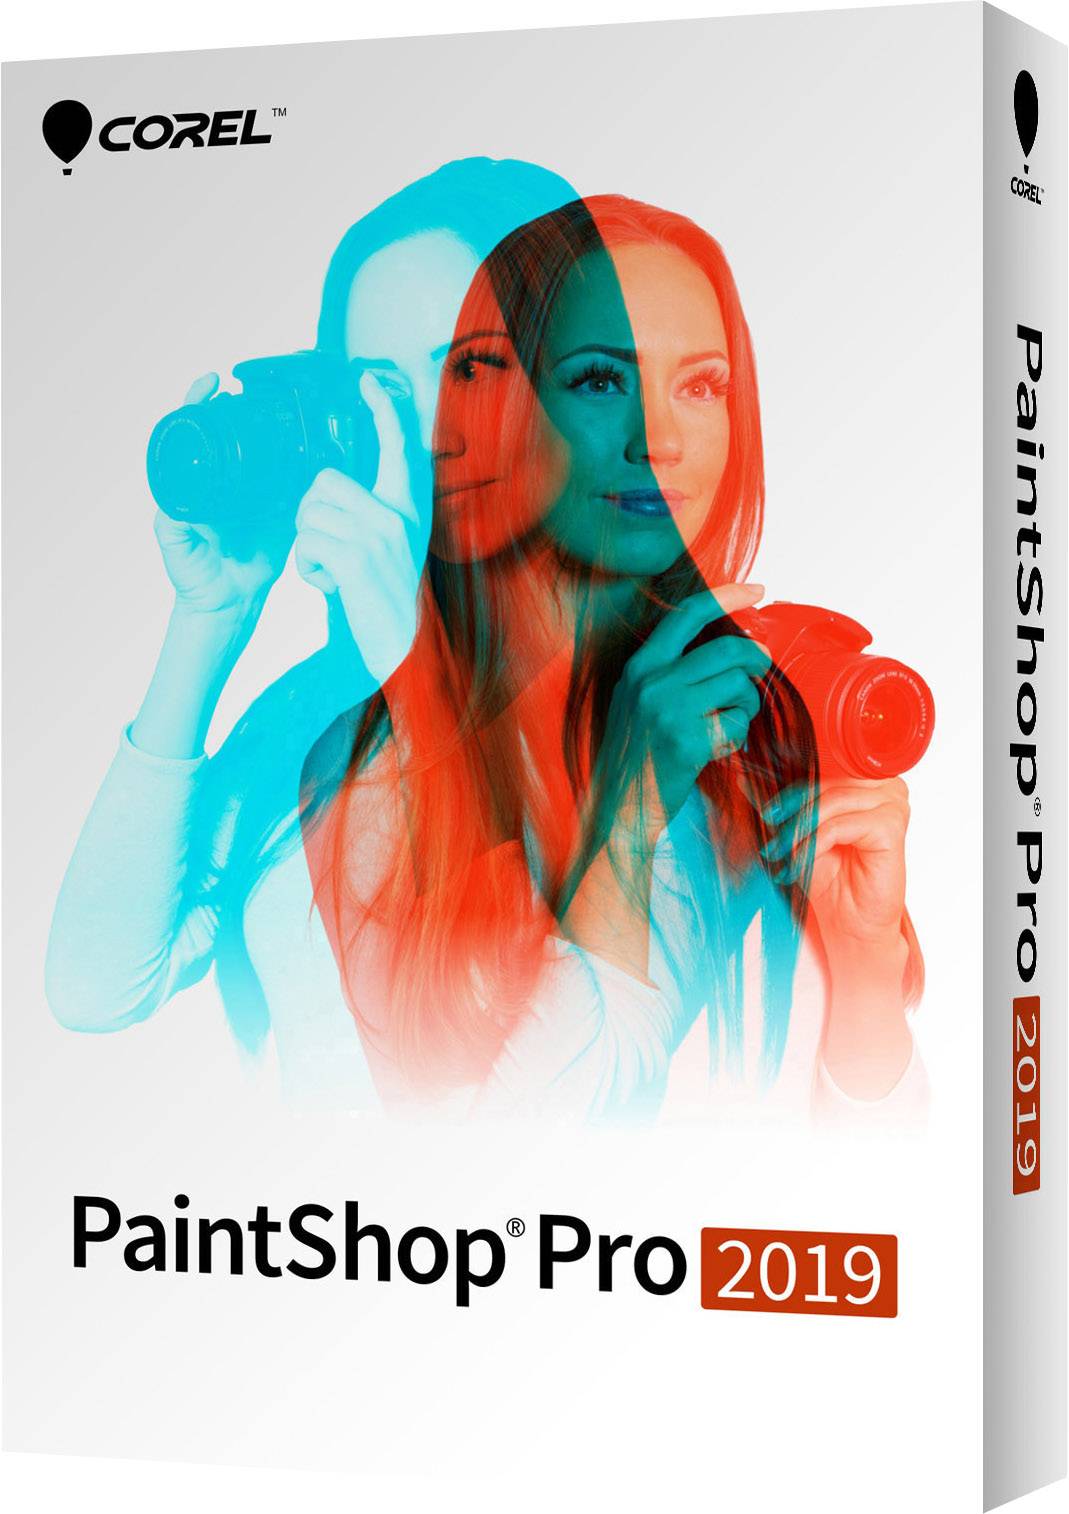 download the last version for ios Corel Paintshop 2023 Pro Ultimate 25.2.0.58